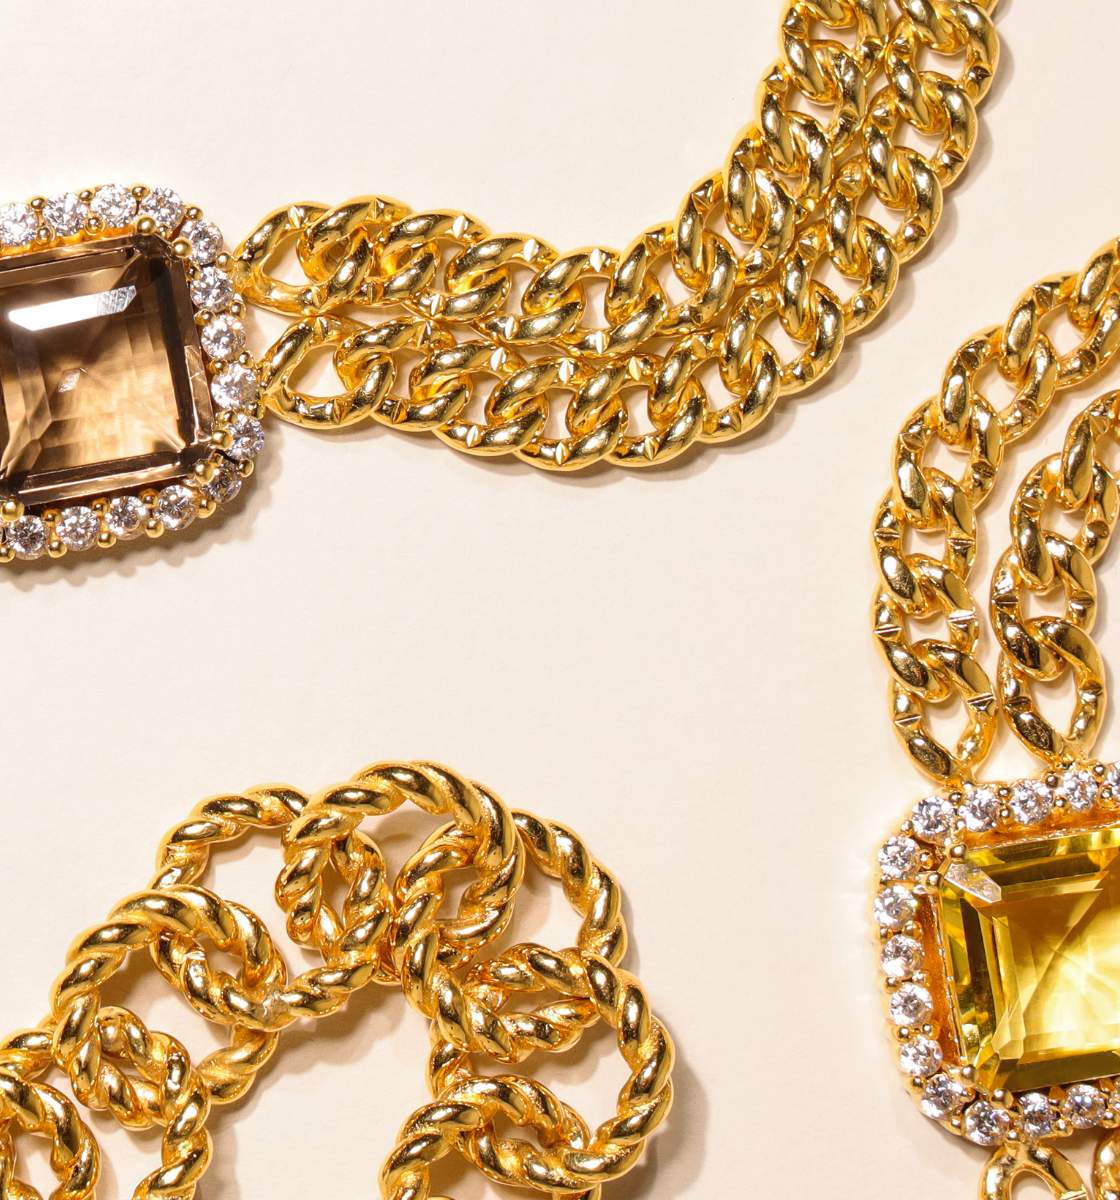 Bangle Bracelets for Women | Solange Crystal and Chain Bracelet | Odette Gold Chain Bracelet | BuDhaGirl